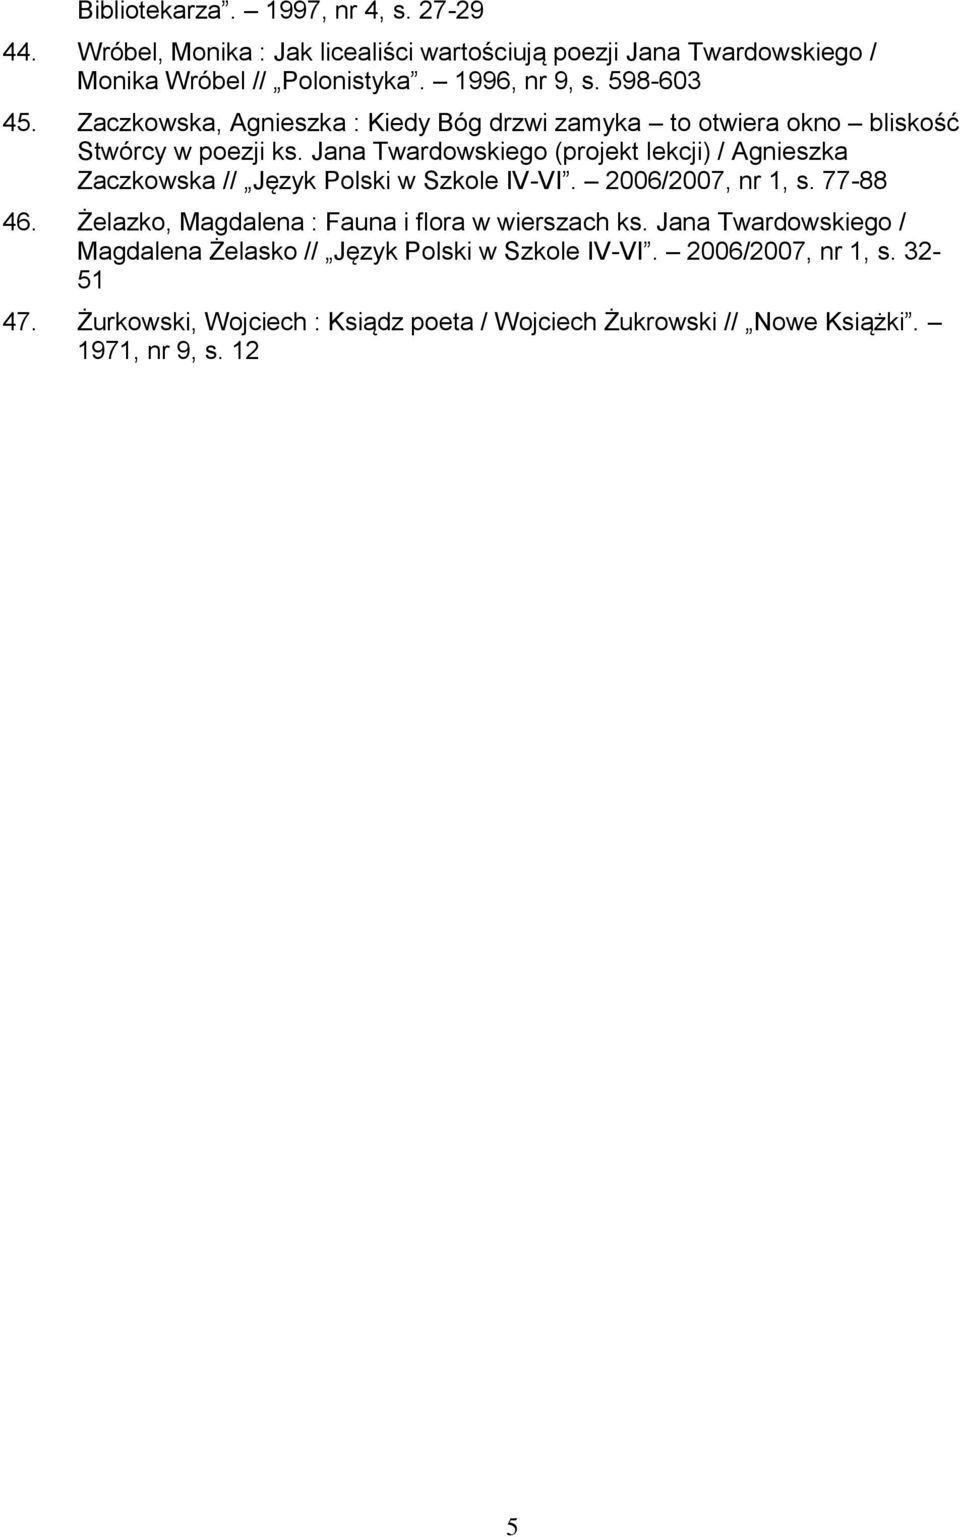 Jana Twardowskiego (projekt lekcji) / Agnieszka Zaczkowska // Język Polski w Szkole IV-VI. 2006/2007, nr 1, s. 77-88 46.